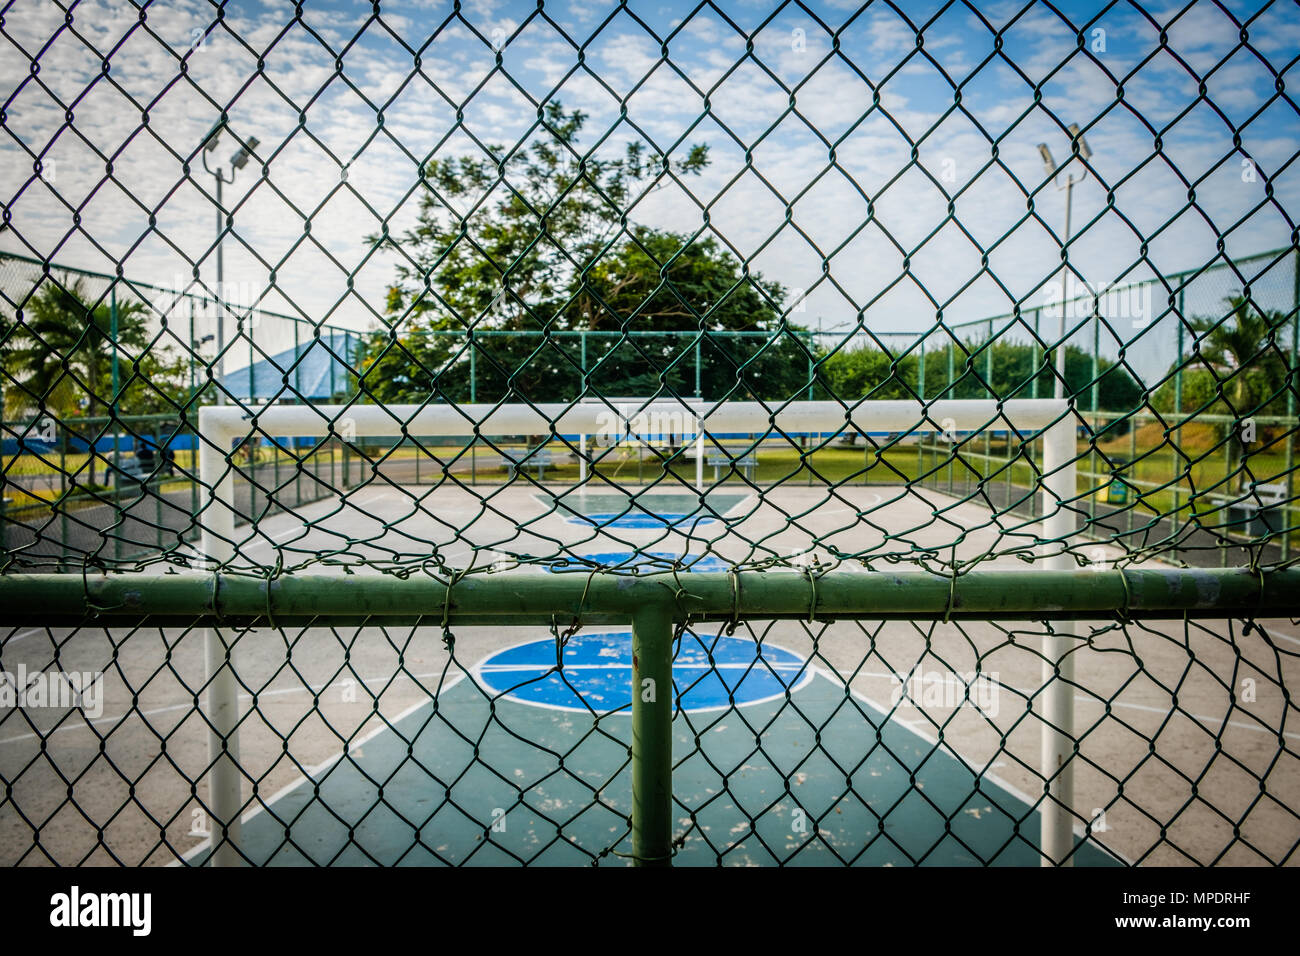 Basketball- und Fußballplatz in öffentlichen Park hinter dem Zaun Stockfoto